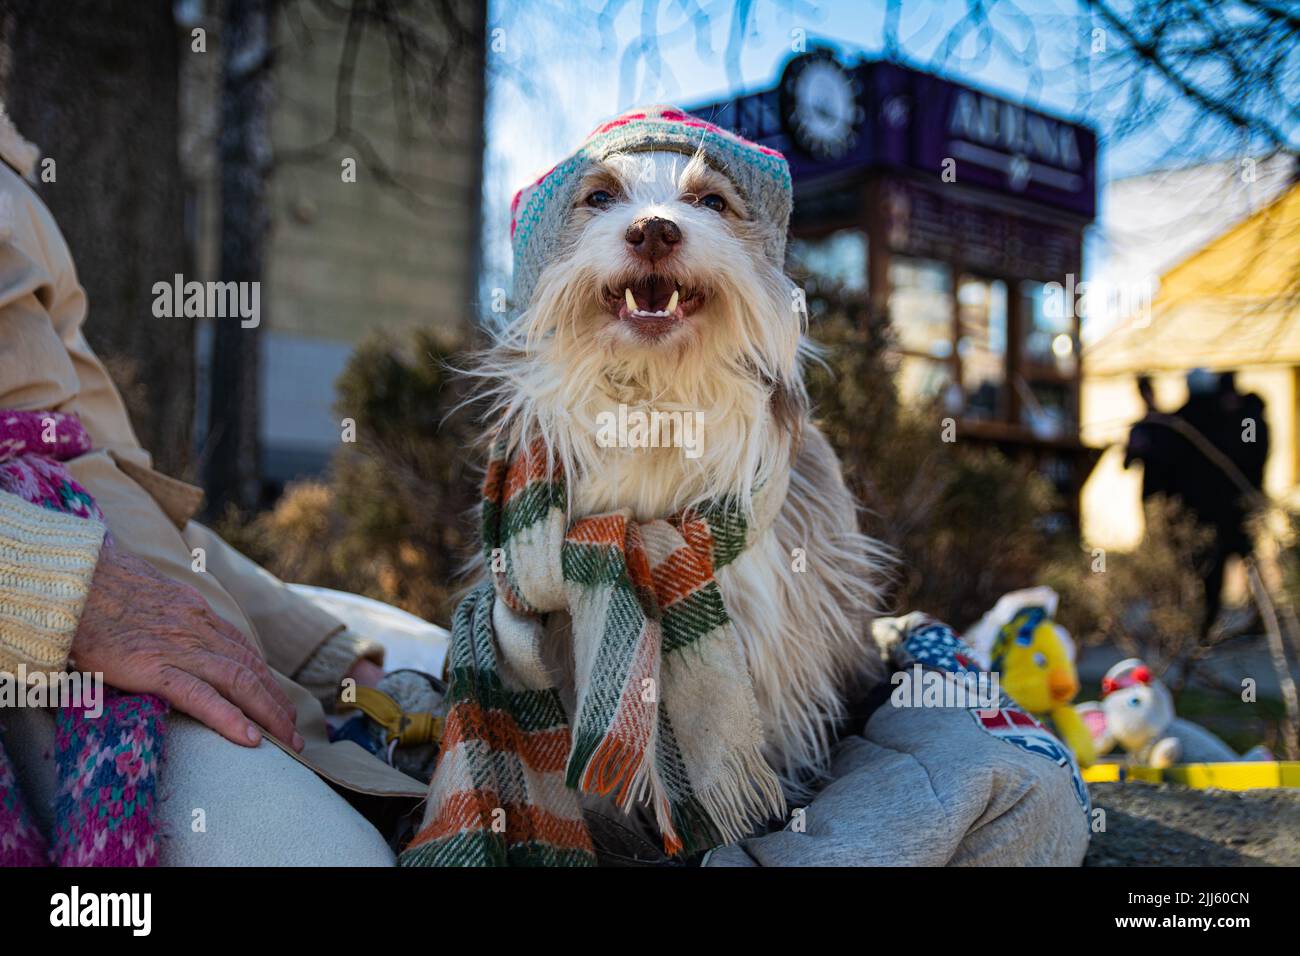 Un vieux chien de cirque tirateux dans un chapeau et un foulard est assis dans la rue le jour d'hiver de minuit à côté de sa maîtresse. Banque D'Images